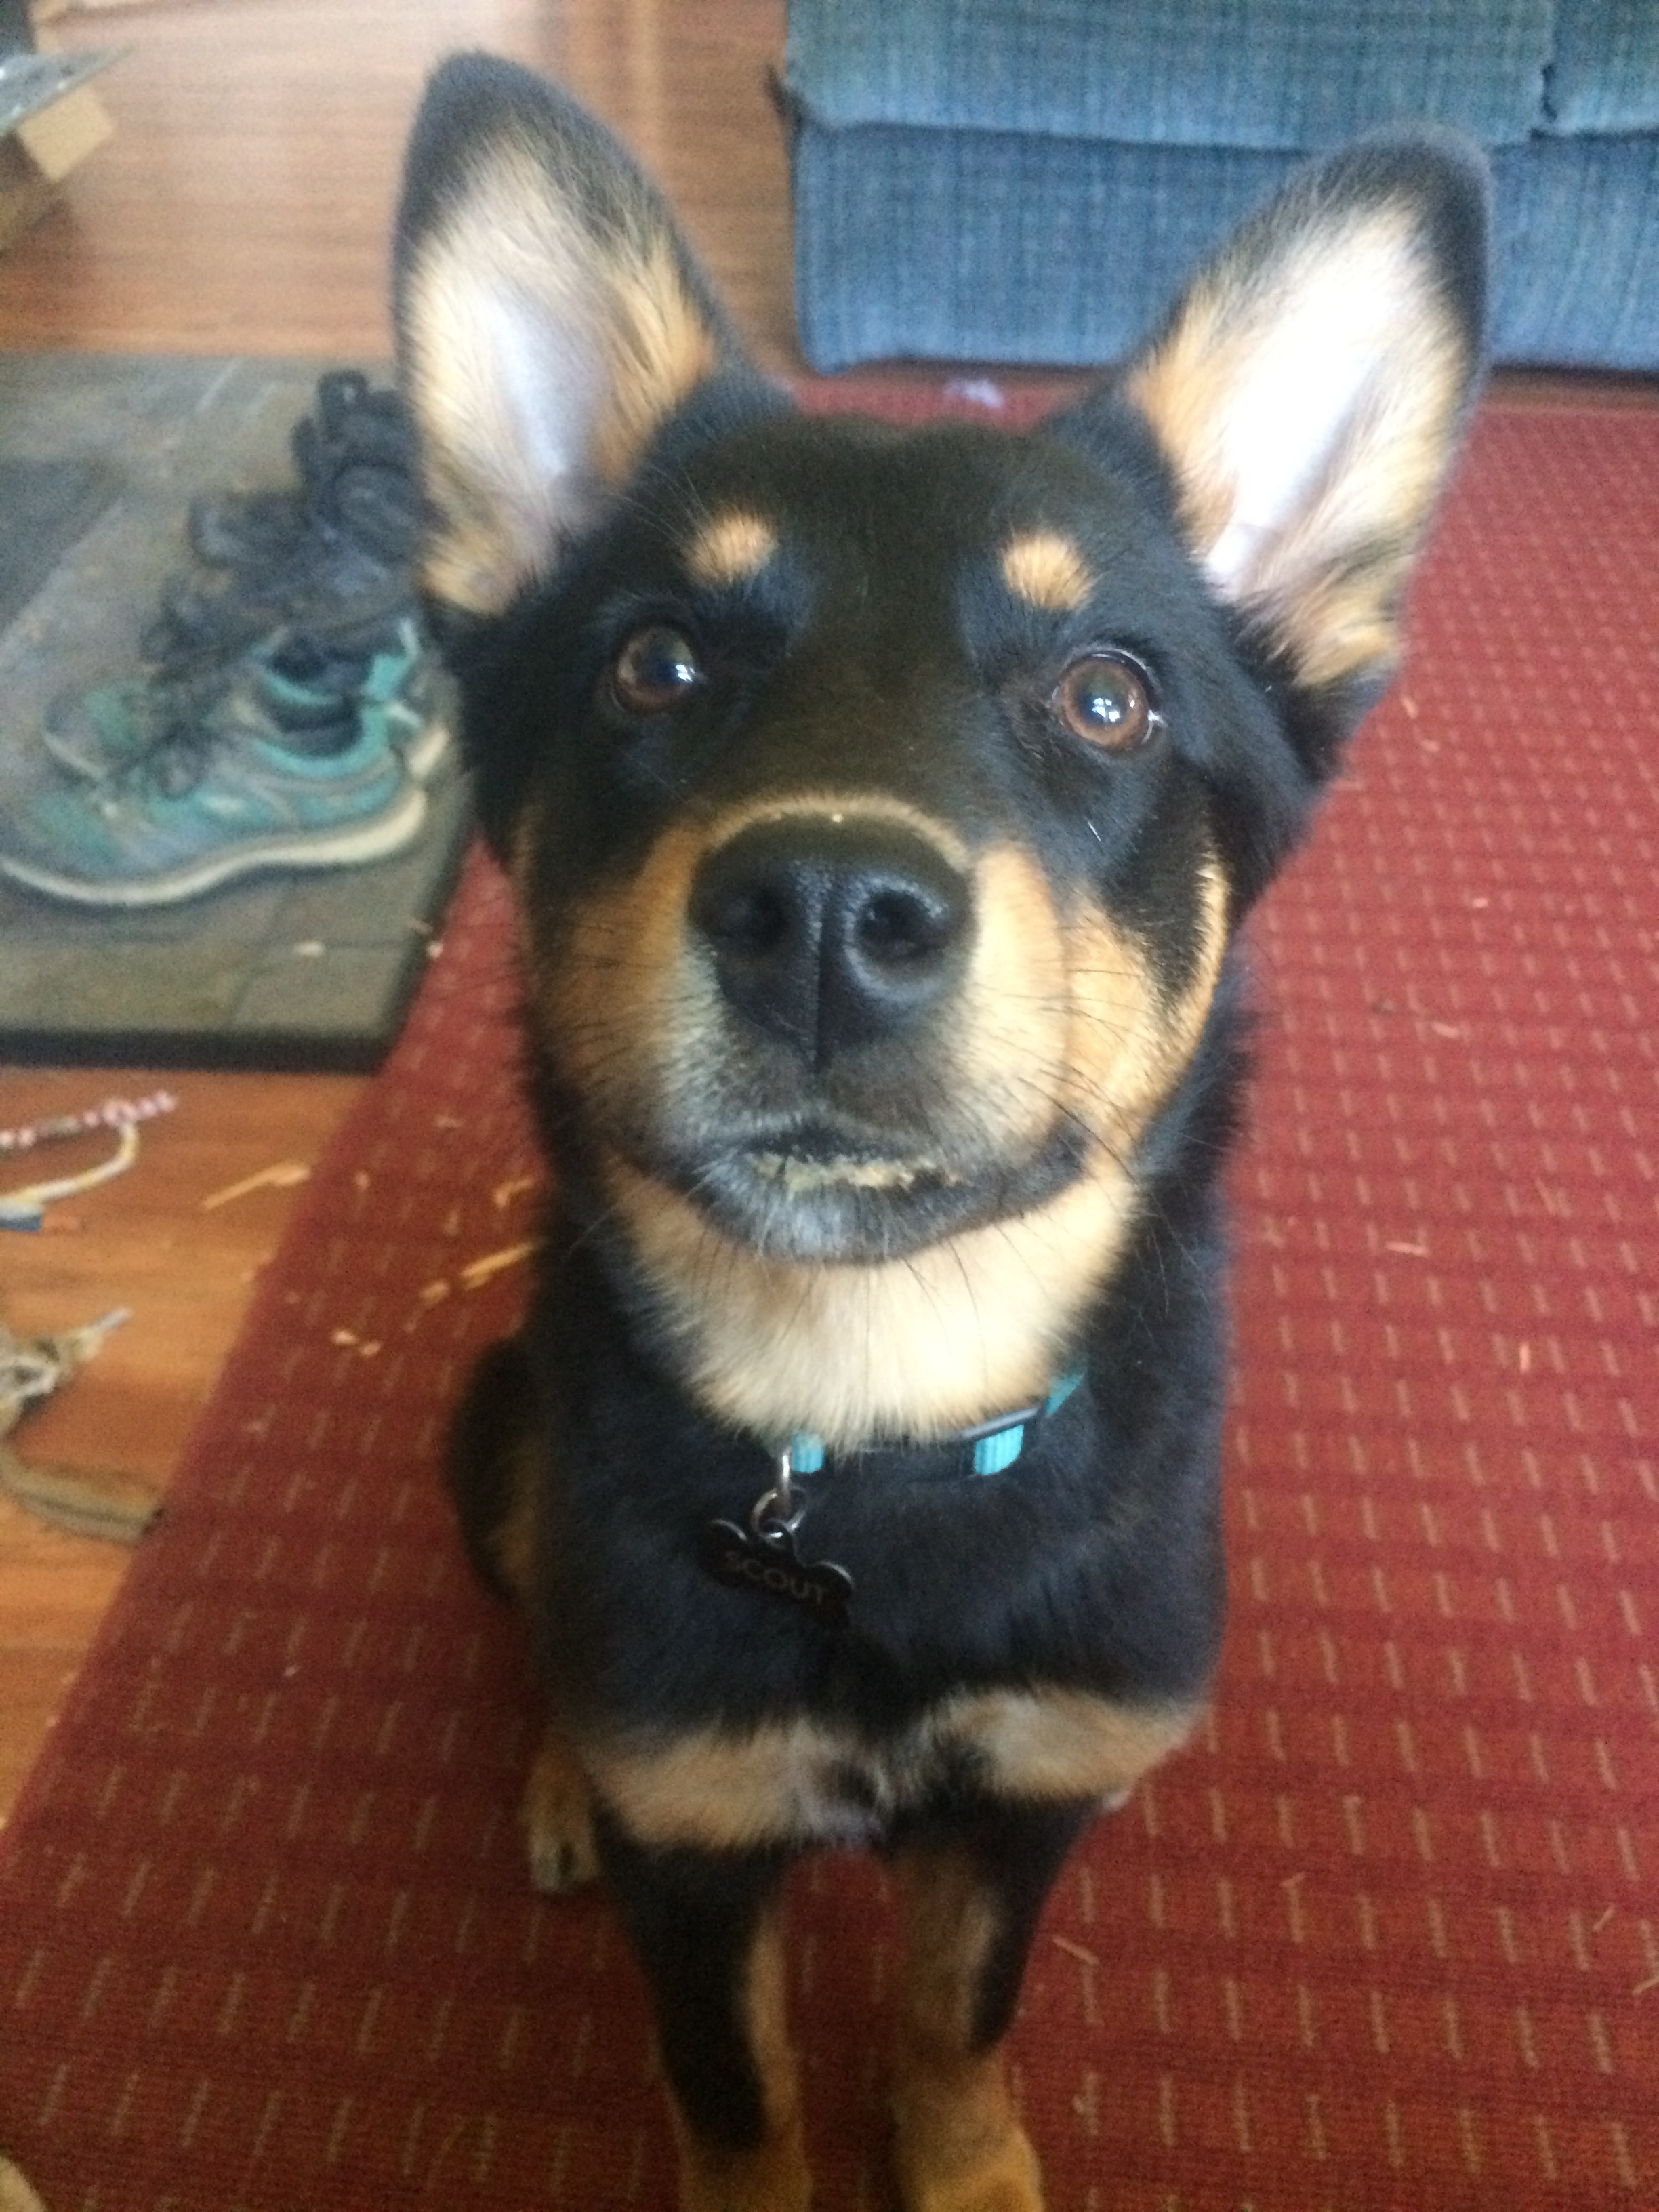 Such a sweet face! Such a mischievous little pup. 